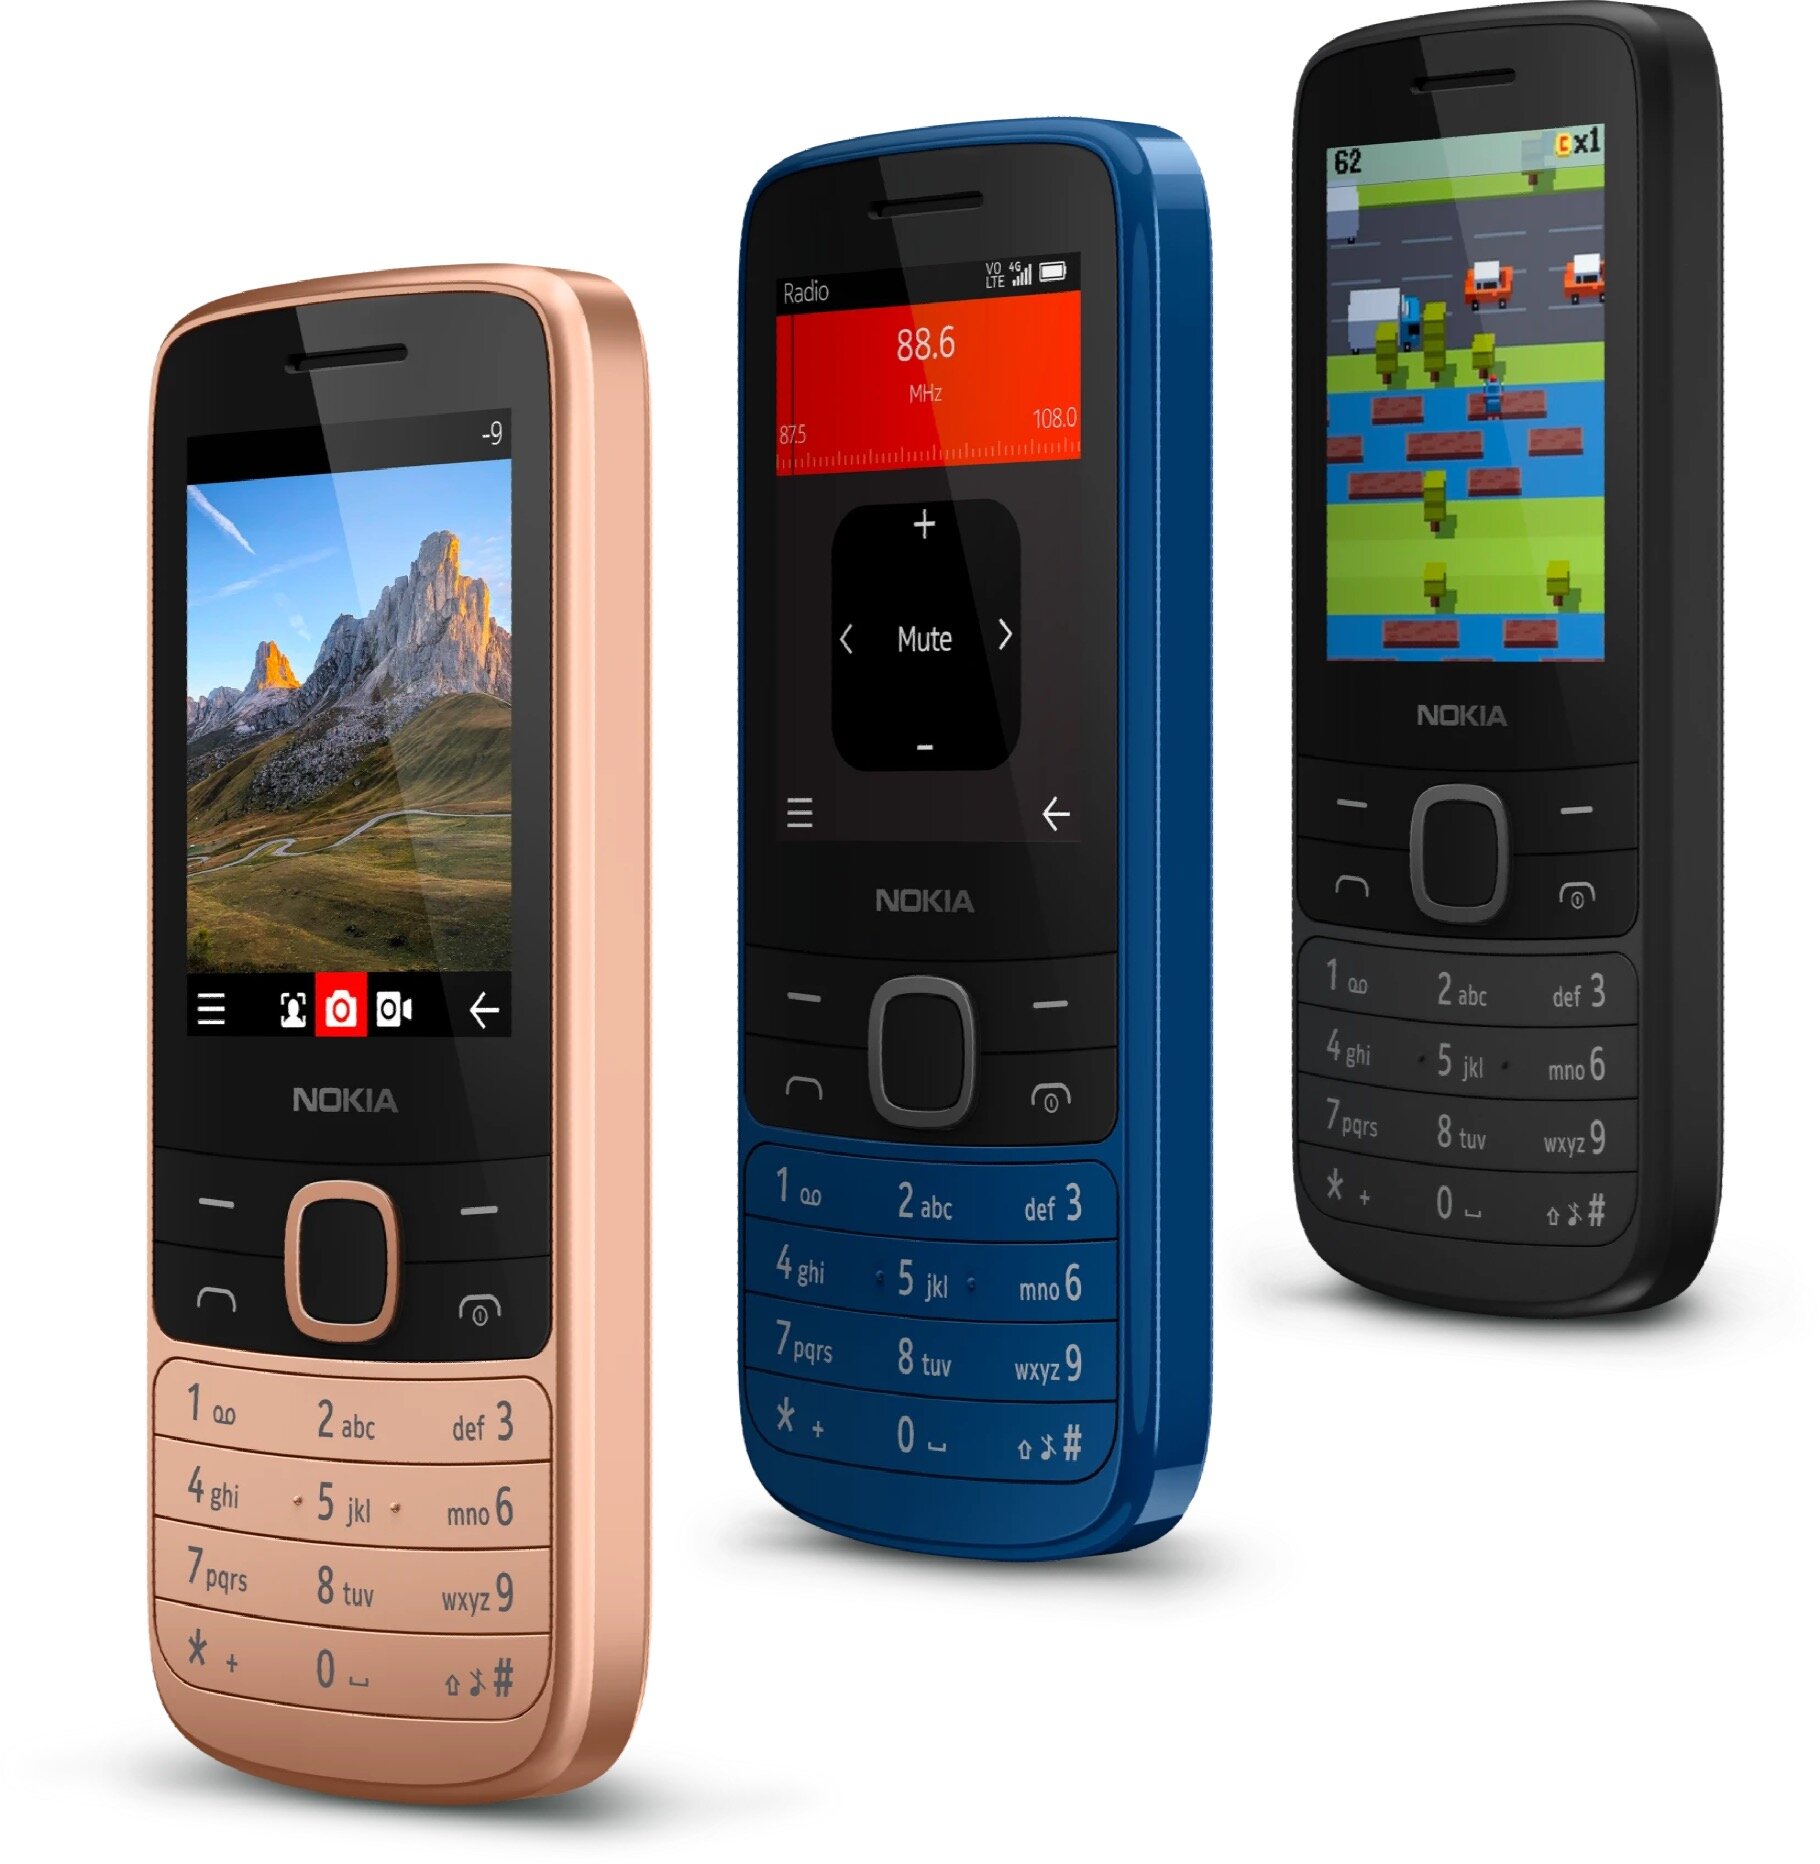 Smartfon NOKIA 225 4G TA-1316 Dual Sim czarna widok na dostępne wersje kolorystyczne od prawej strony